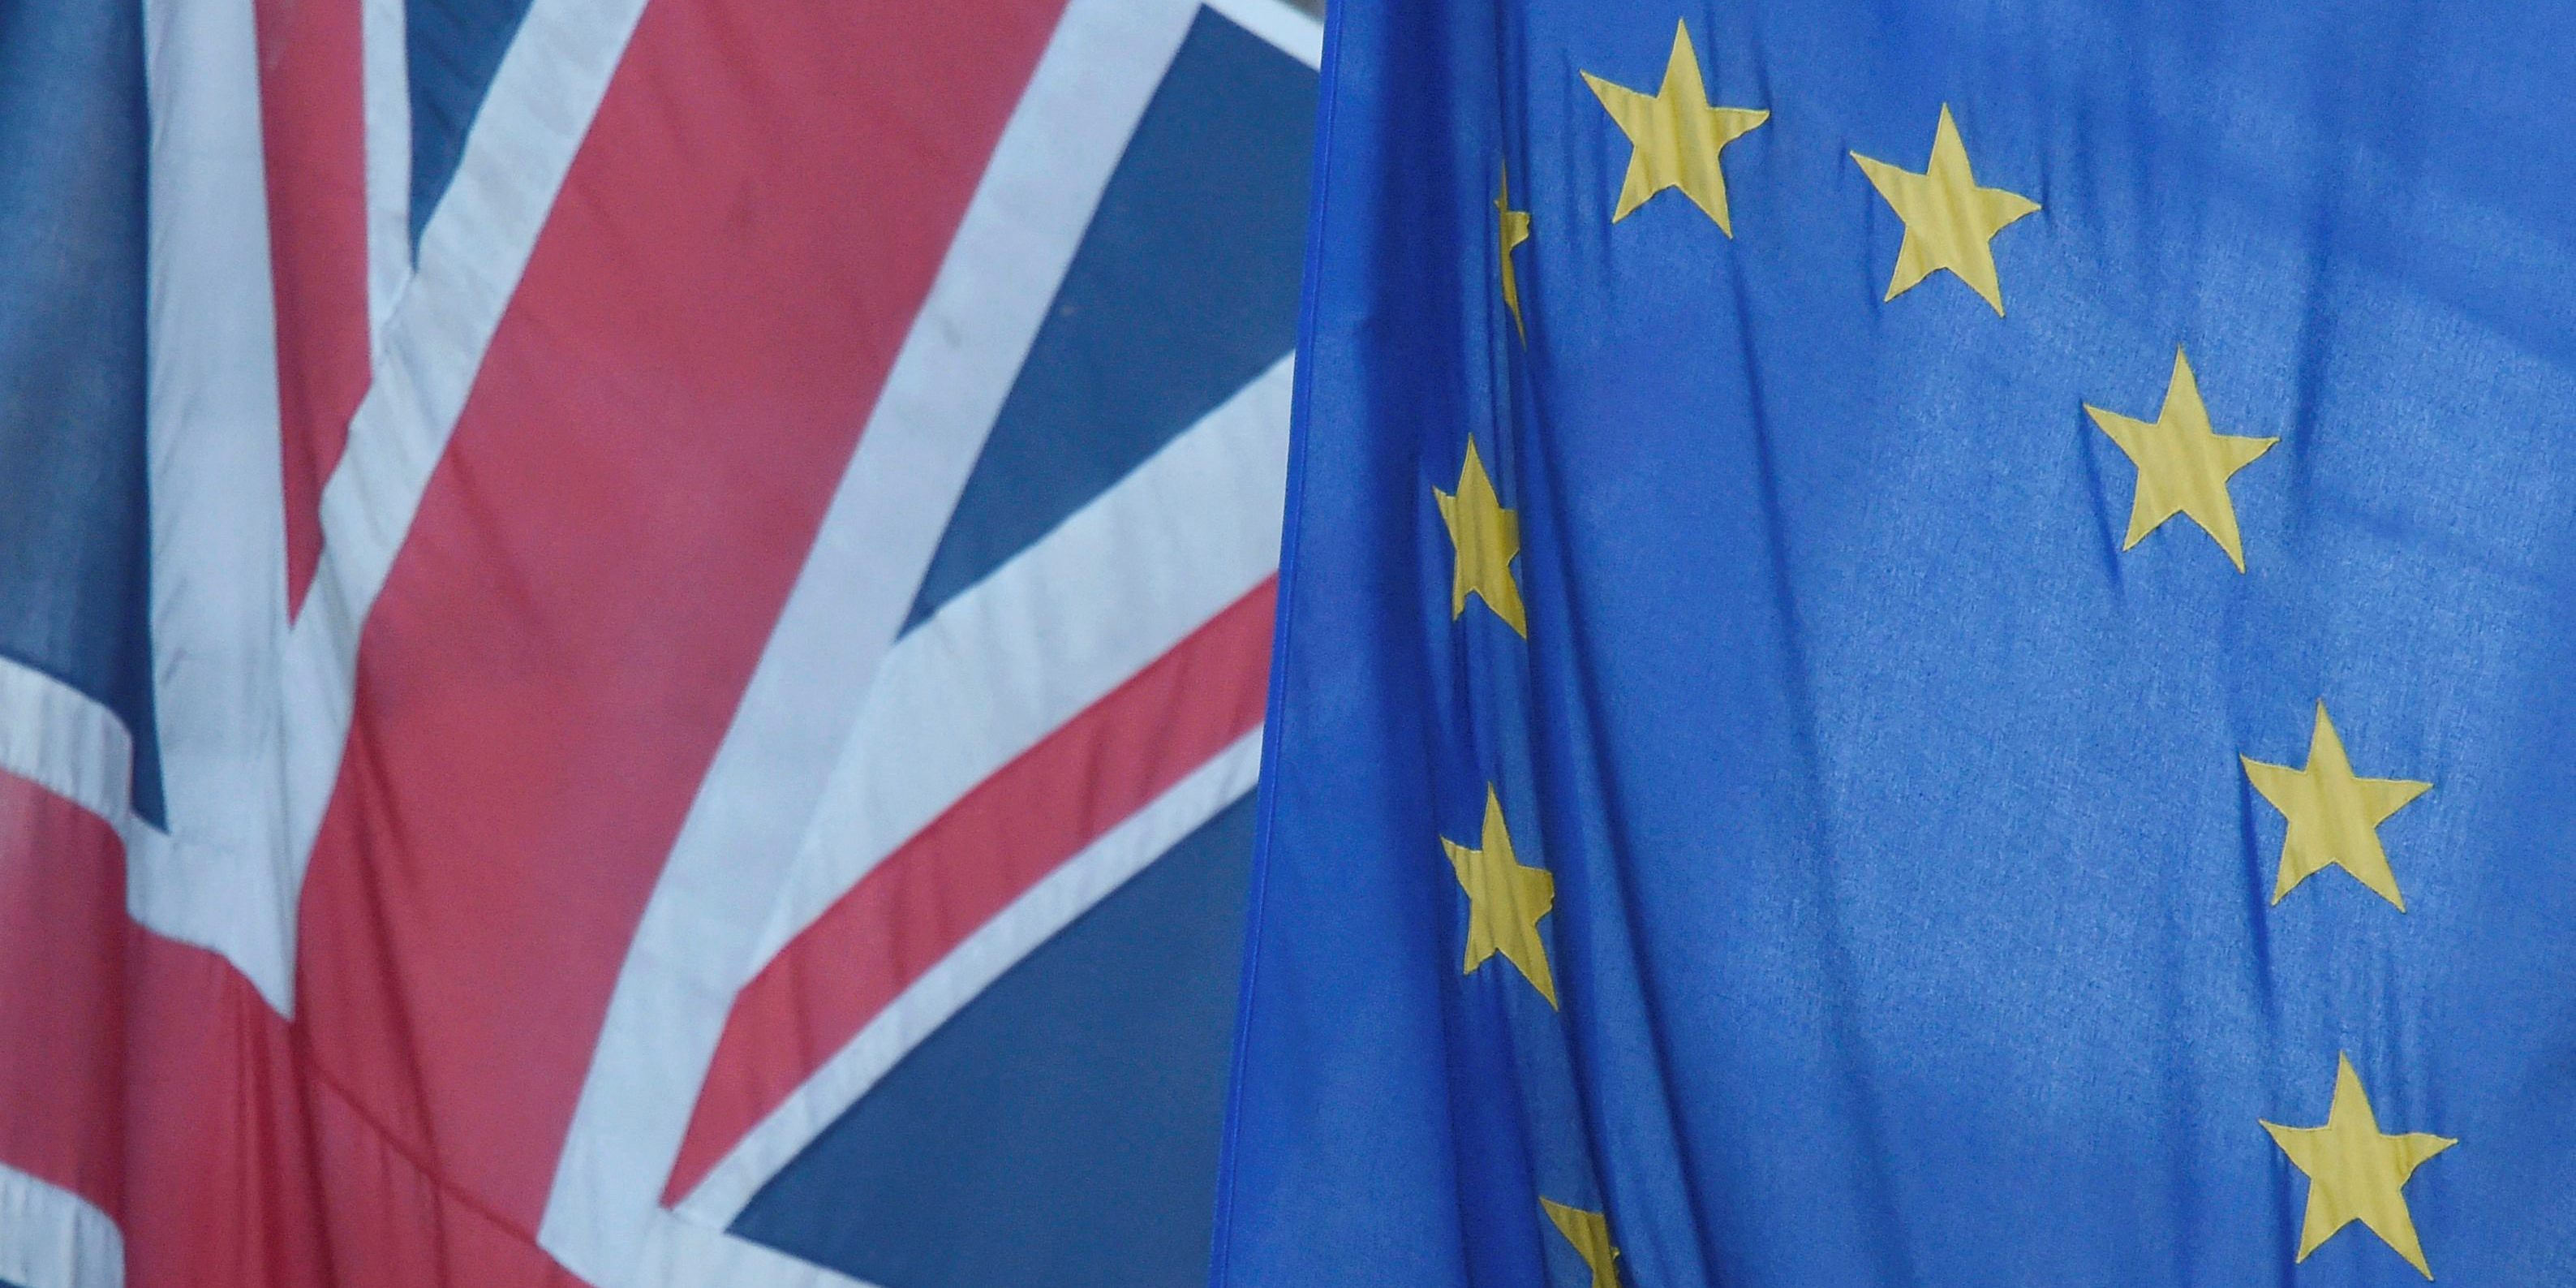 Accords post-Brexit : le gouvernement britannique dément catégoriquement vouloir resserrer les liens avec l'UE